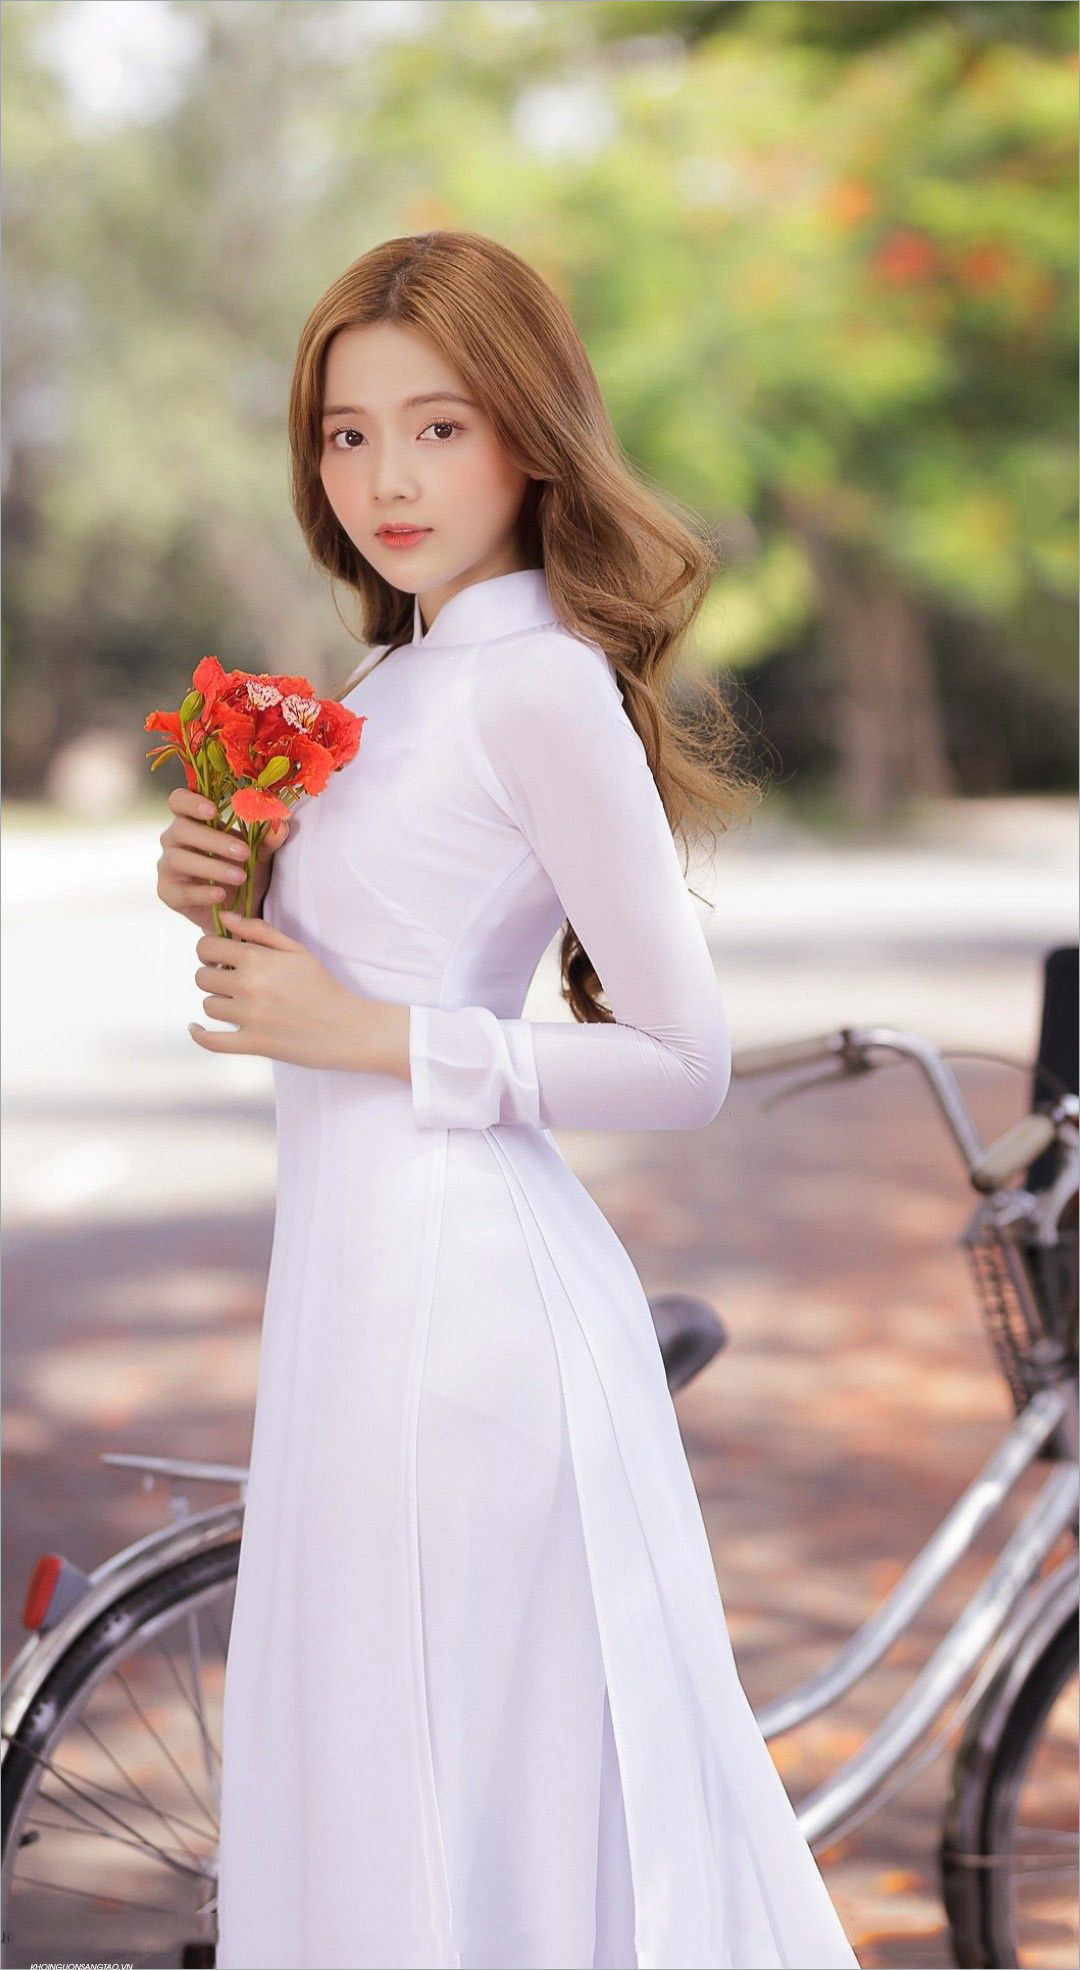 Áo dài gái xinh luôn là niềm tự hào của văn hóa truyền thống Việt Nam. Tại đây, bạn sẽ tìm thấy những hình ảnh rực rỡ, lung linh và quyến rũ của những cô gái xinh, điệu đà trong áo dài truyền thống.